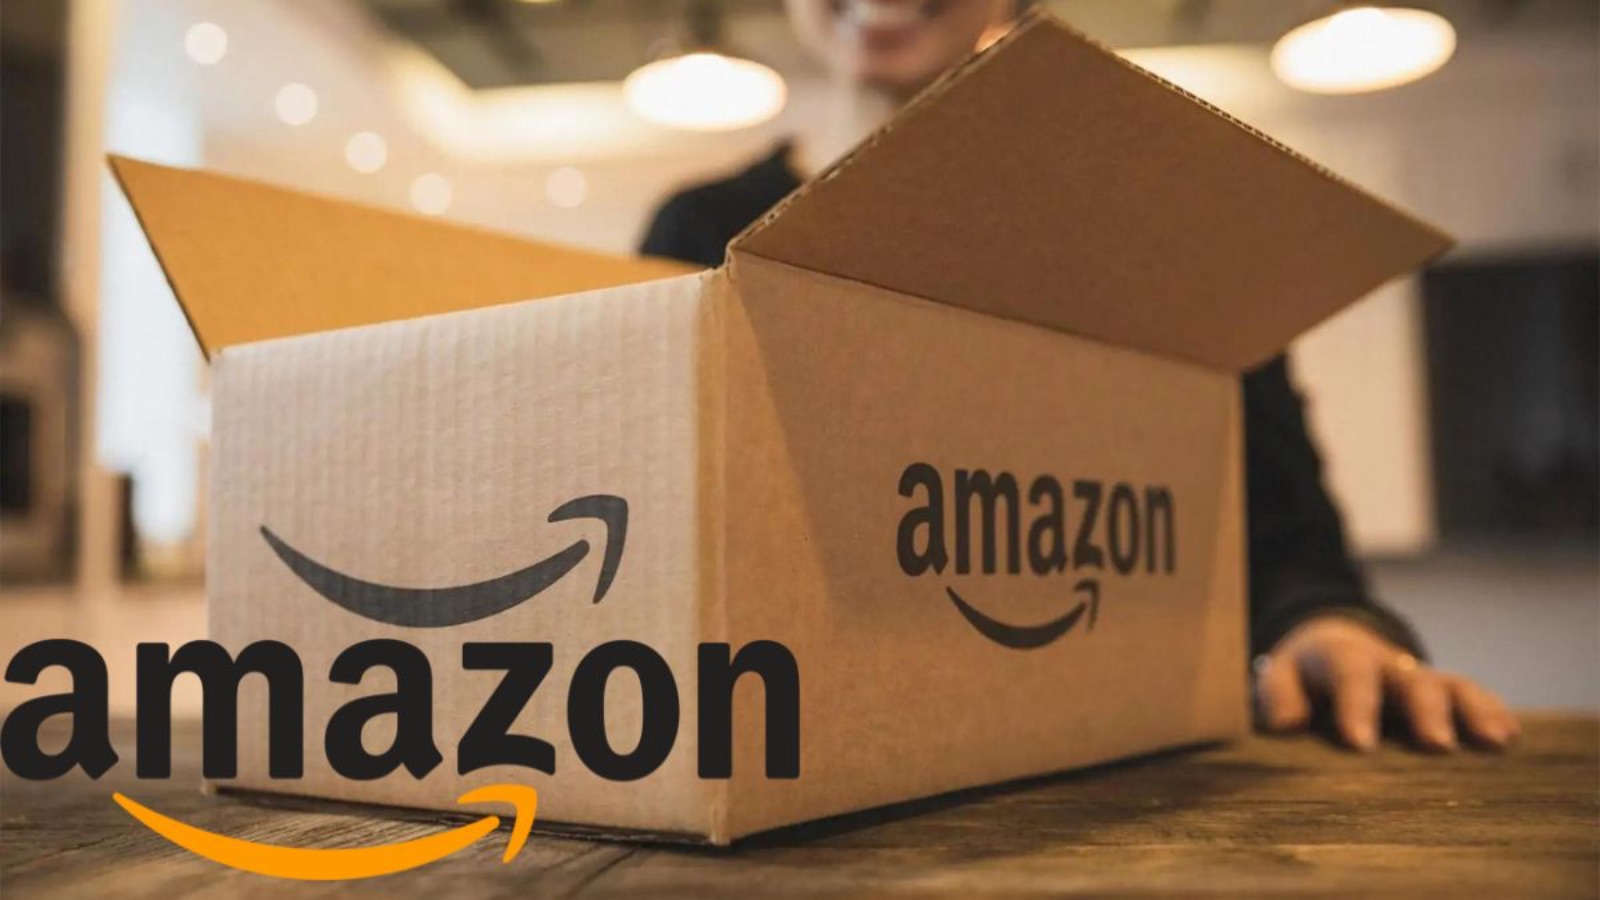 Amazon, nuove offerte BOMBA al 65% di sconto distruggono Expert 